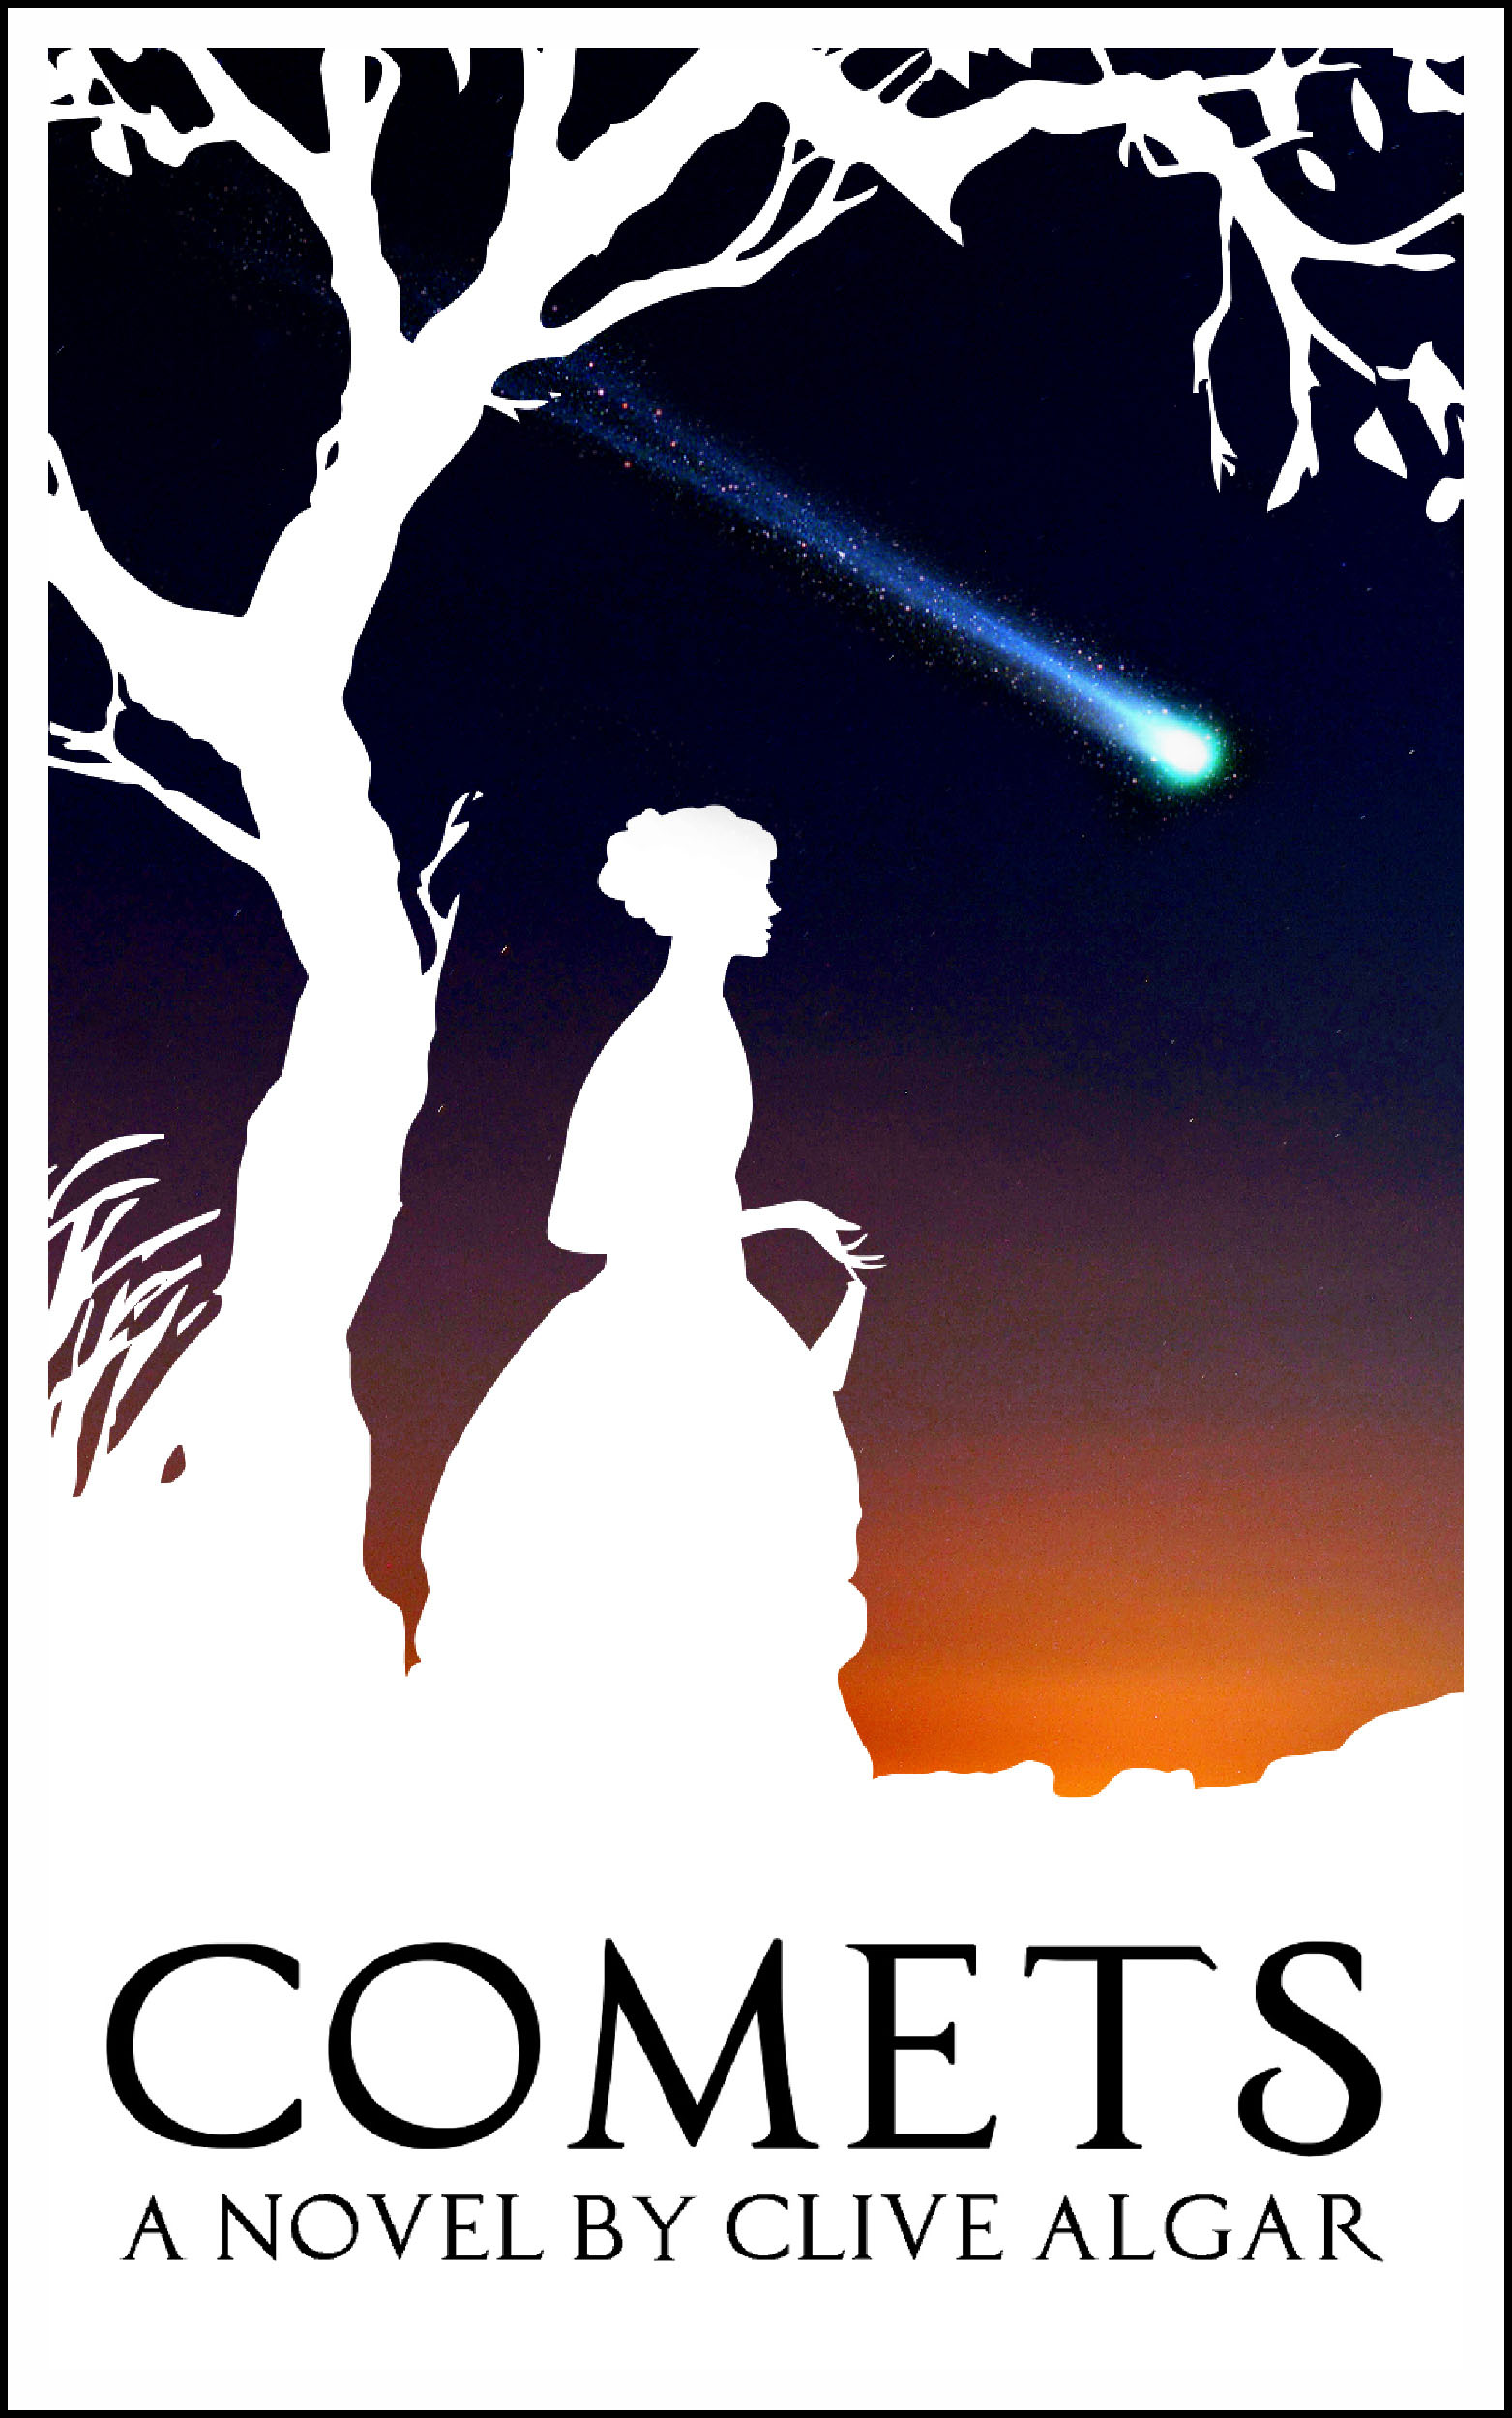 Comets by Clive Algar